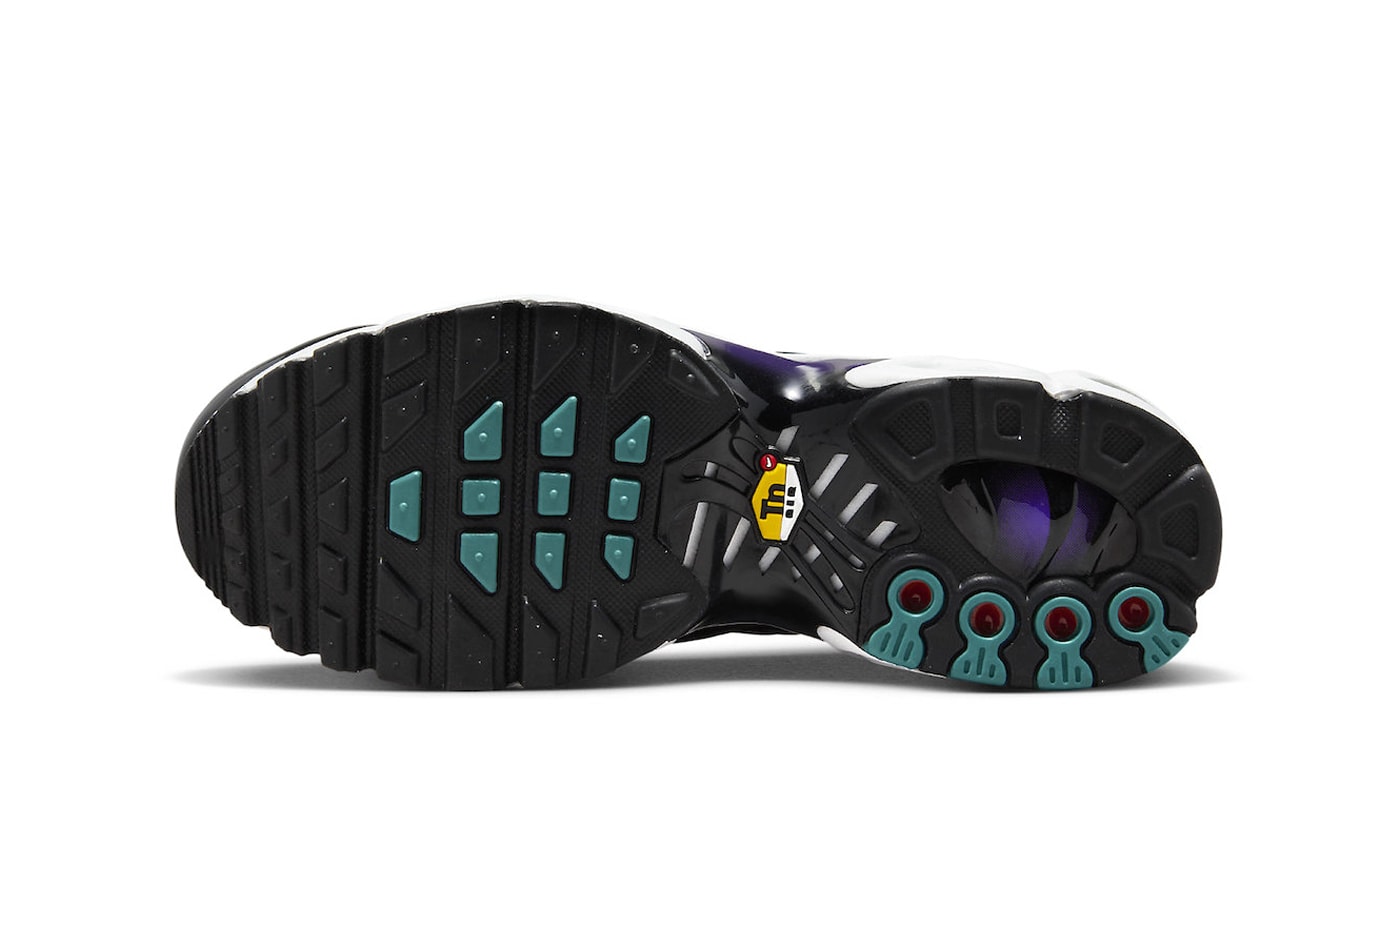 ナイキエアマックスプラスからホワイト/パープルのグラデーションを纏った新色モデルが登場 Nike Air Max Plus Gets Dressed in "Reverse Grape" FQ2415-500 purple technical sneaker athletic comfortable swoosh